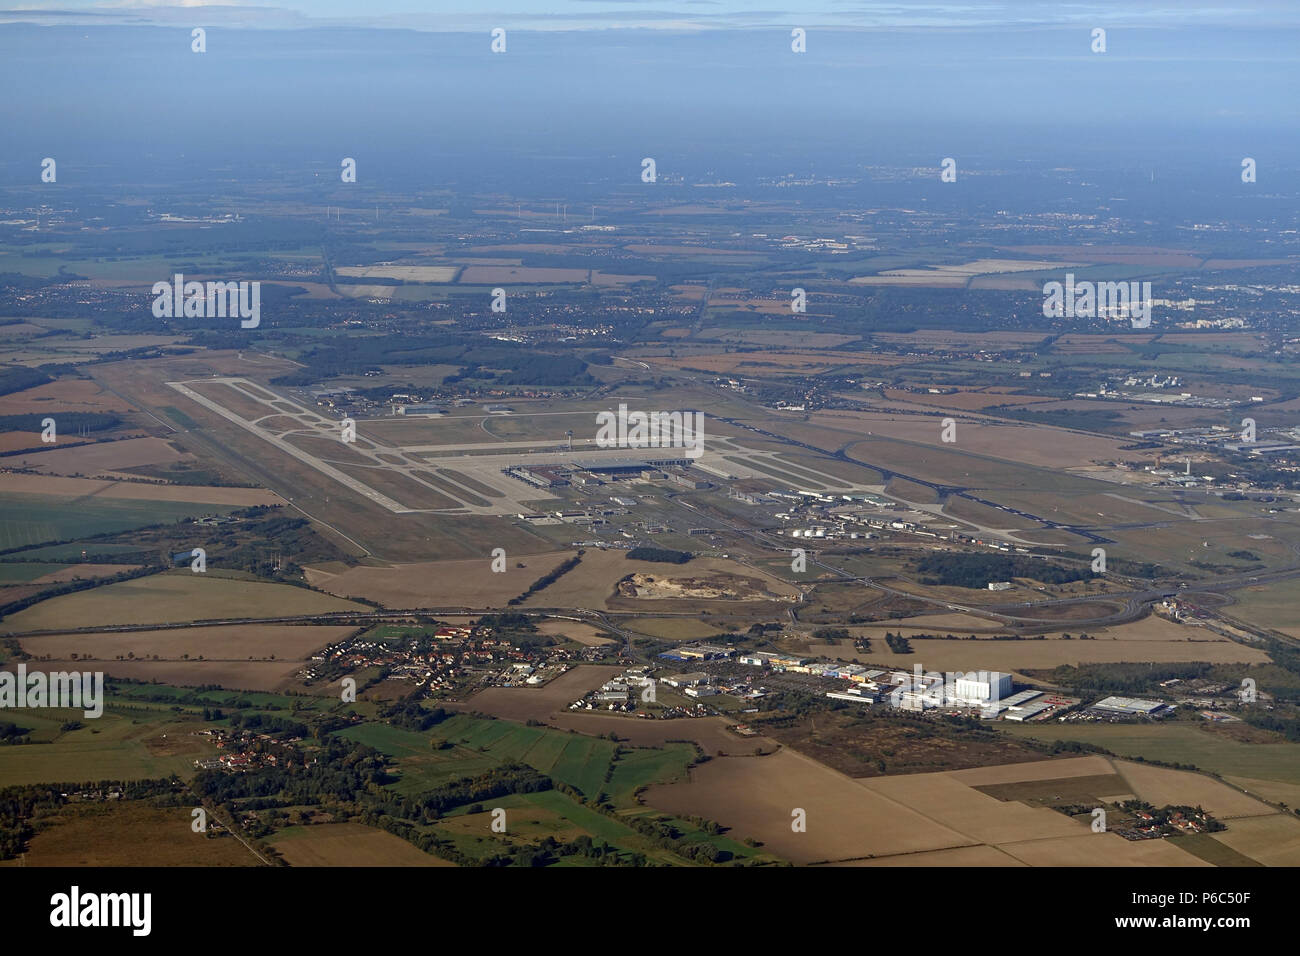 Schoenefeld, Alemania - vista aérea del aeropuerto de Berlin-Schoenefeld y el centro comercial Waltersdorf Foto de stock